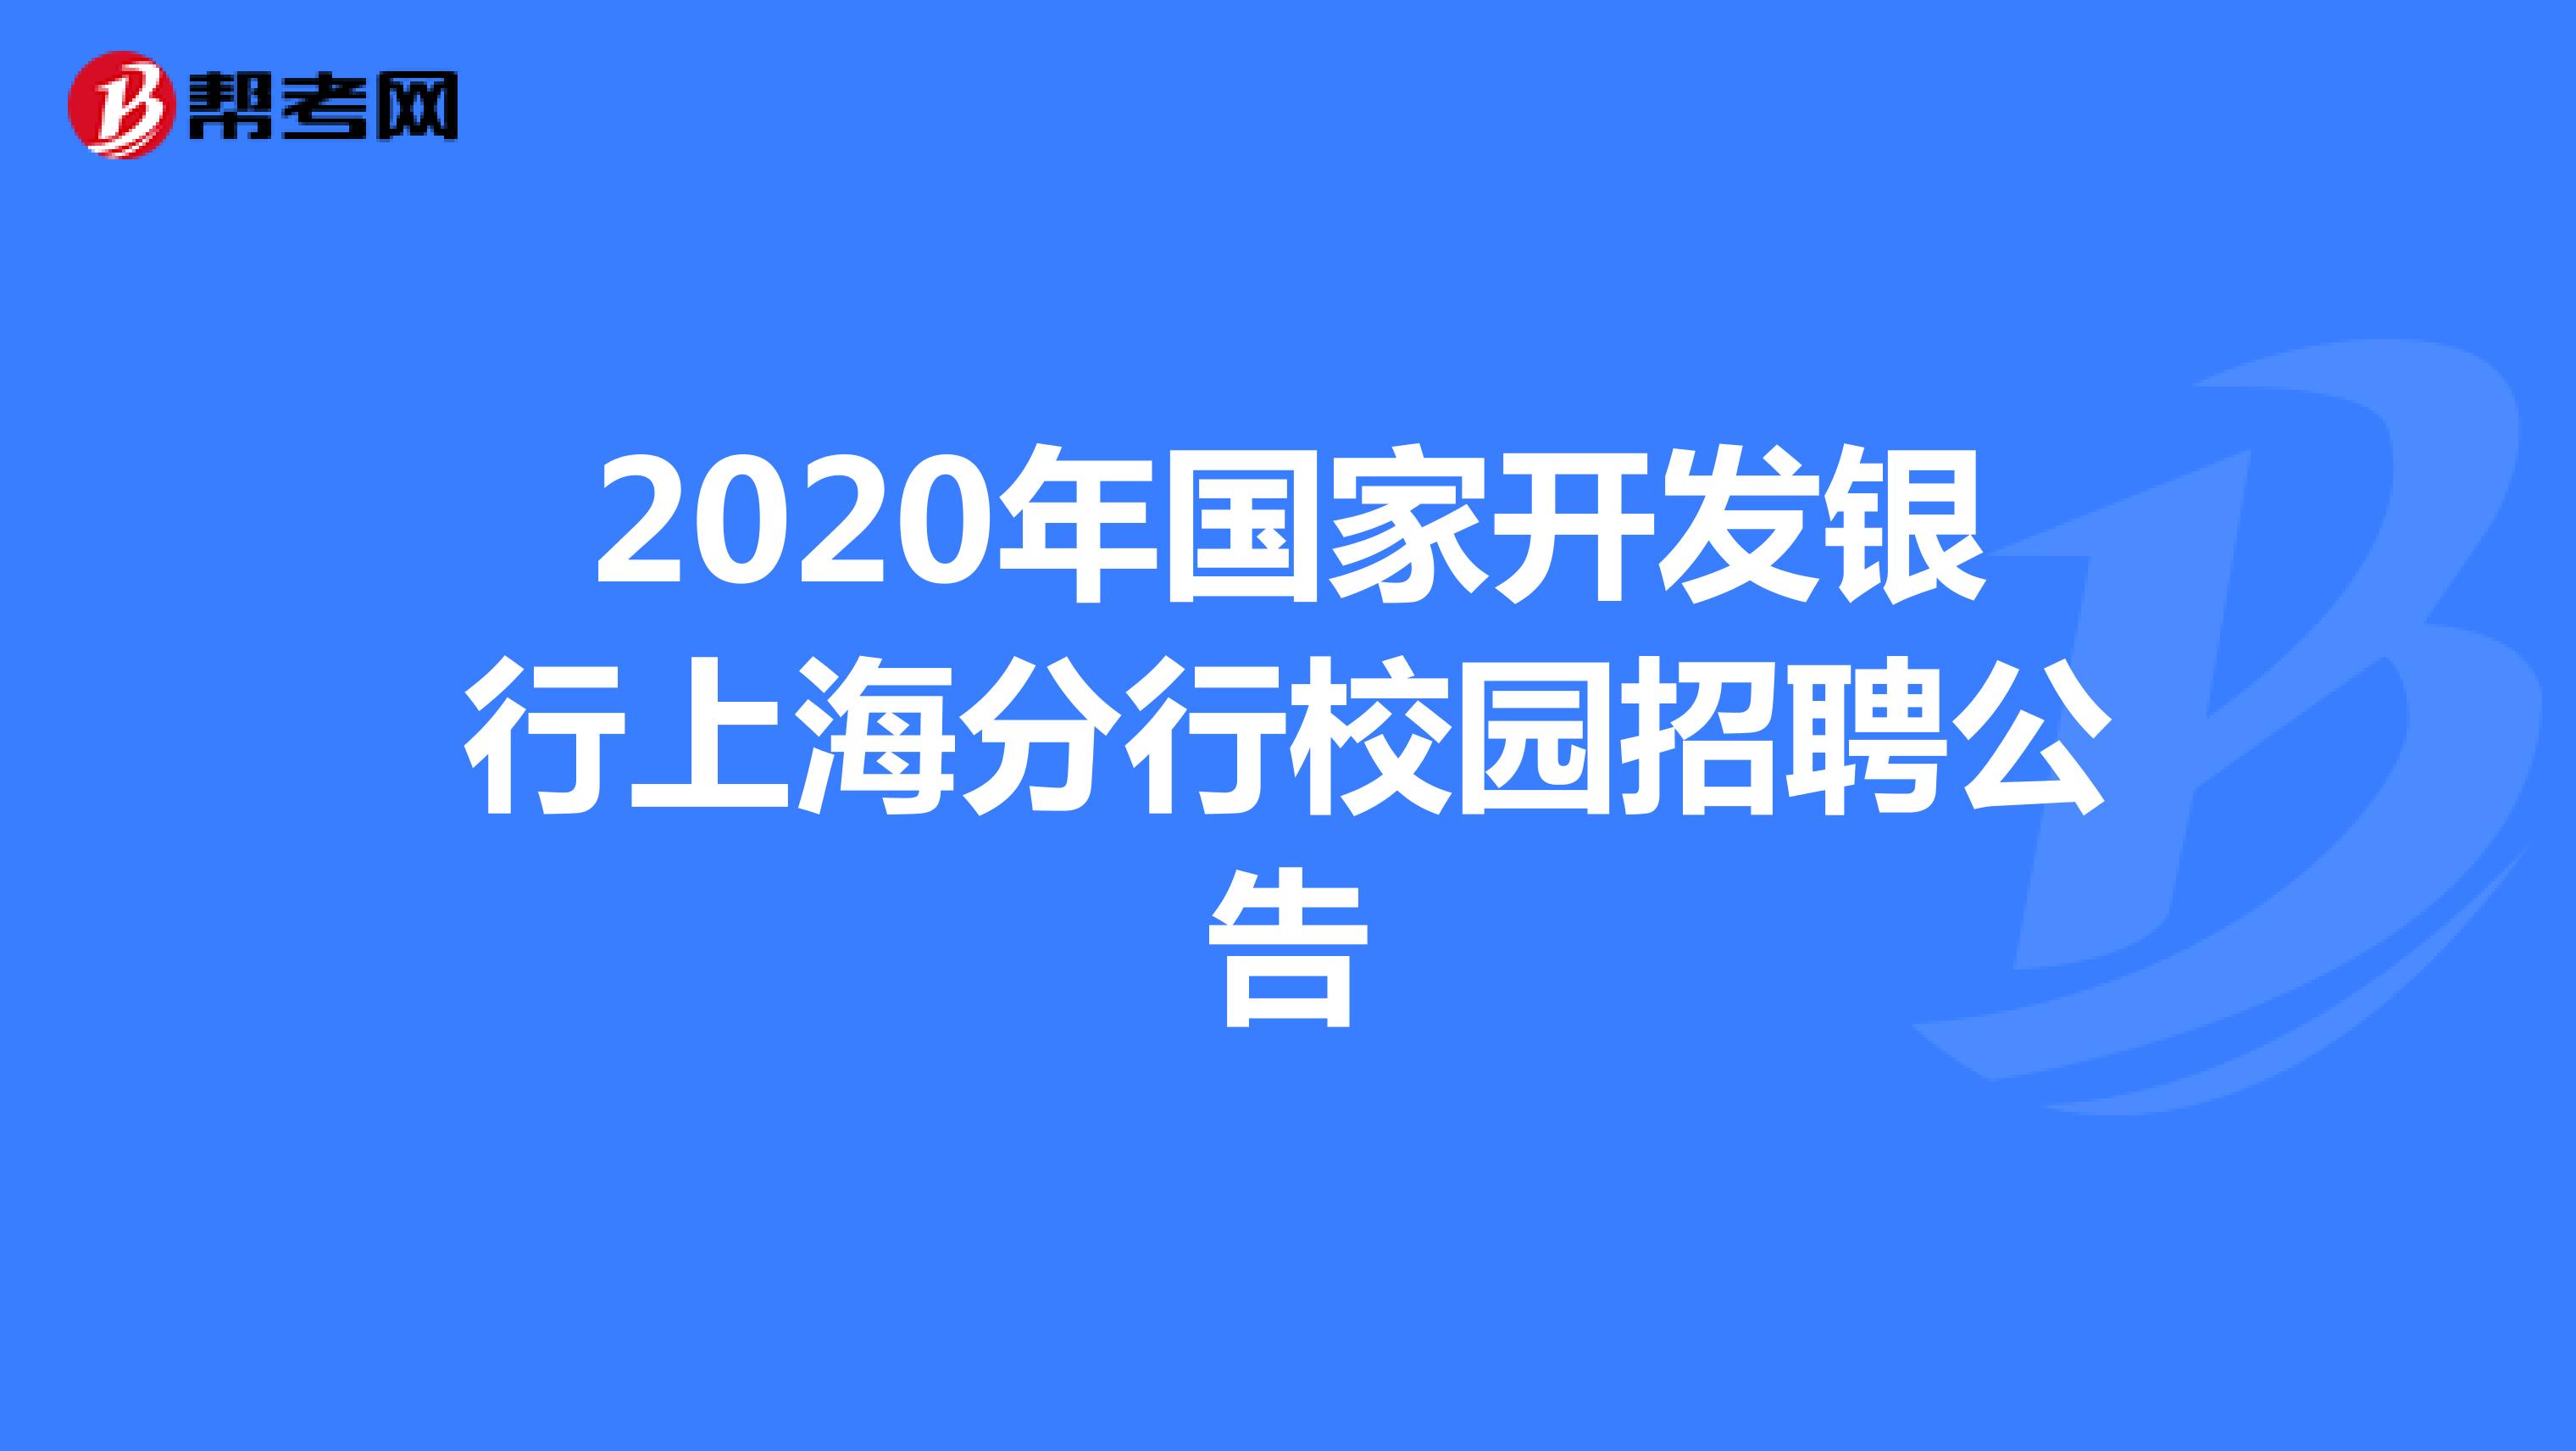 2020年国家开发银行上海分行校园招聘公告